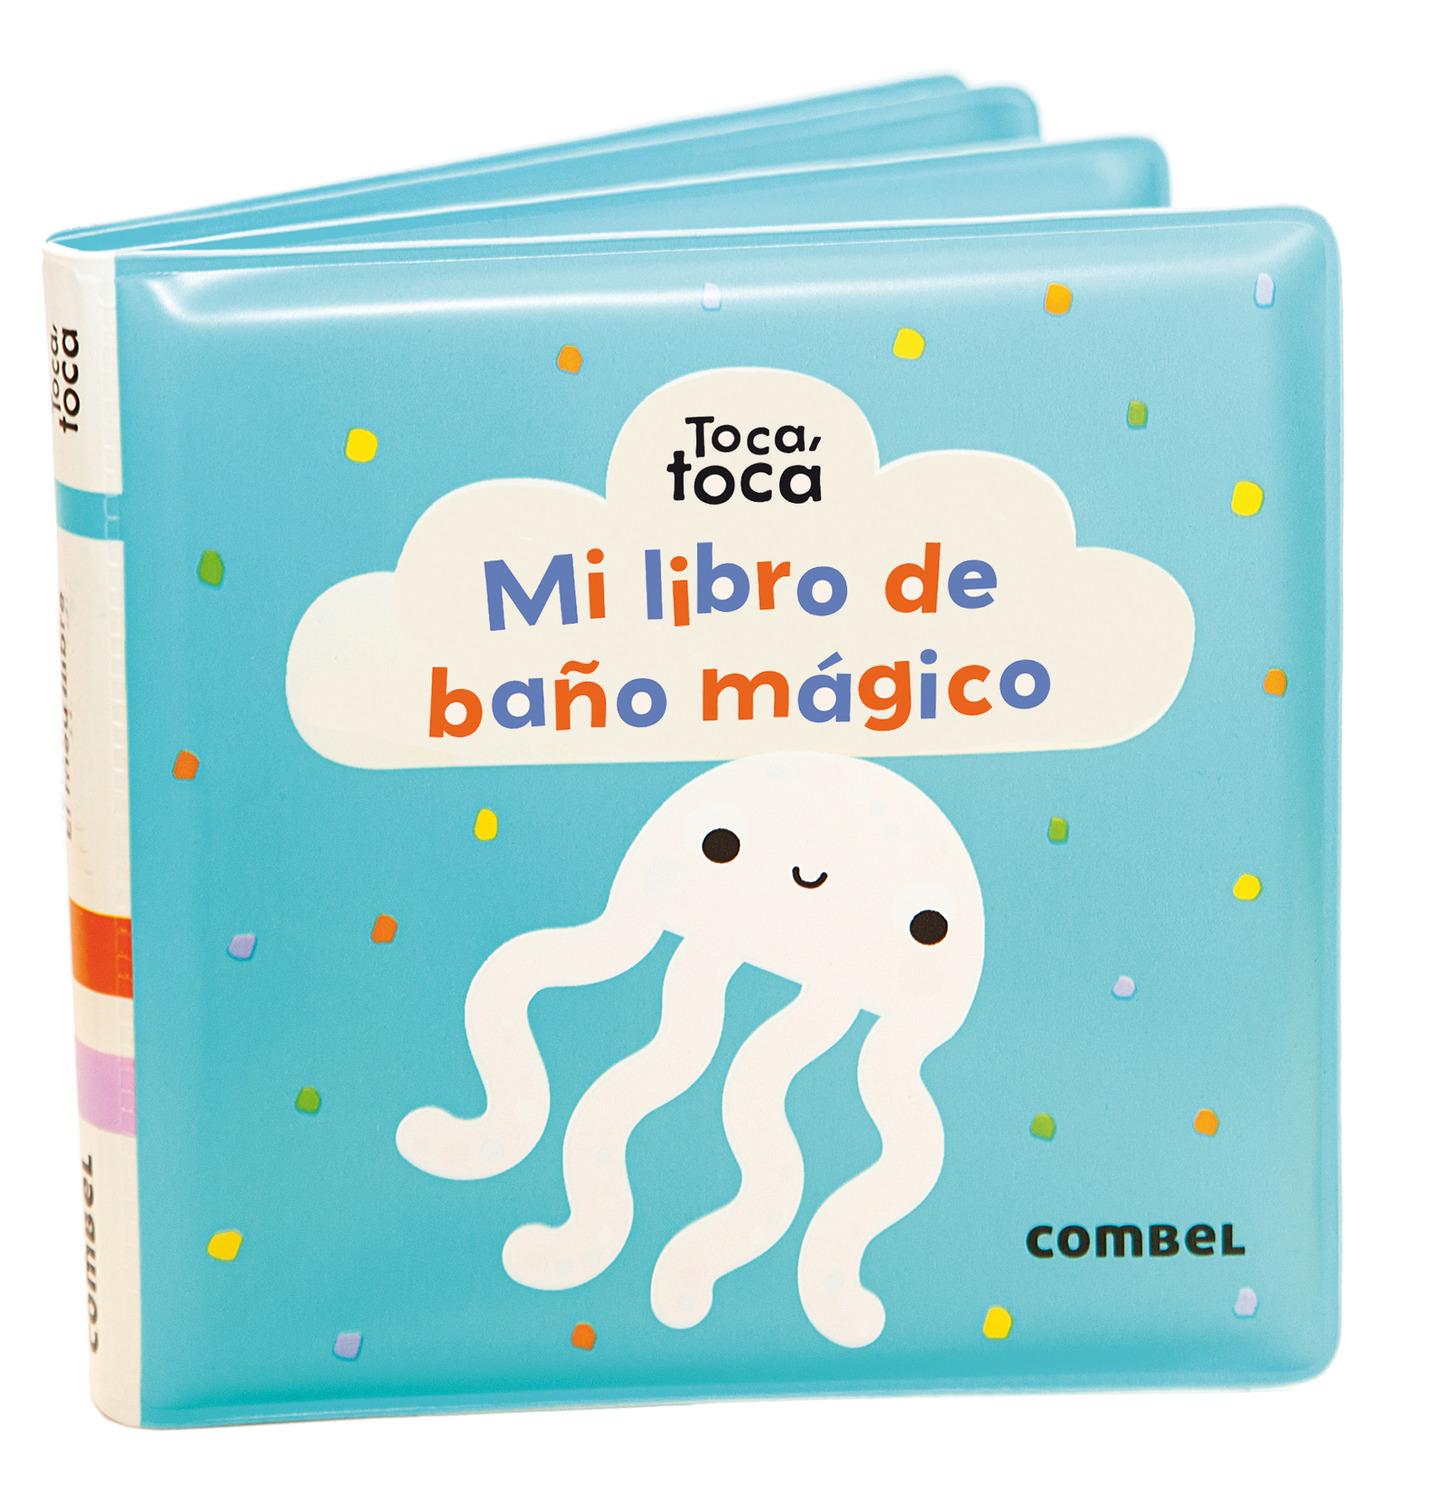 Mi libro magico/ My Magic Book (Spanish Edition)